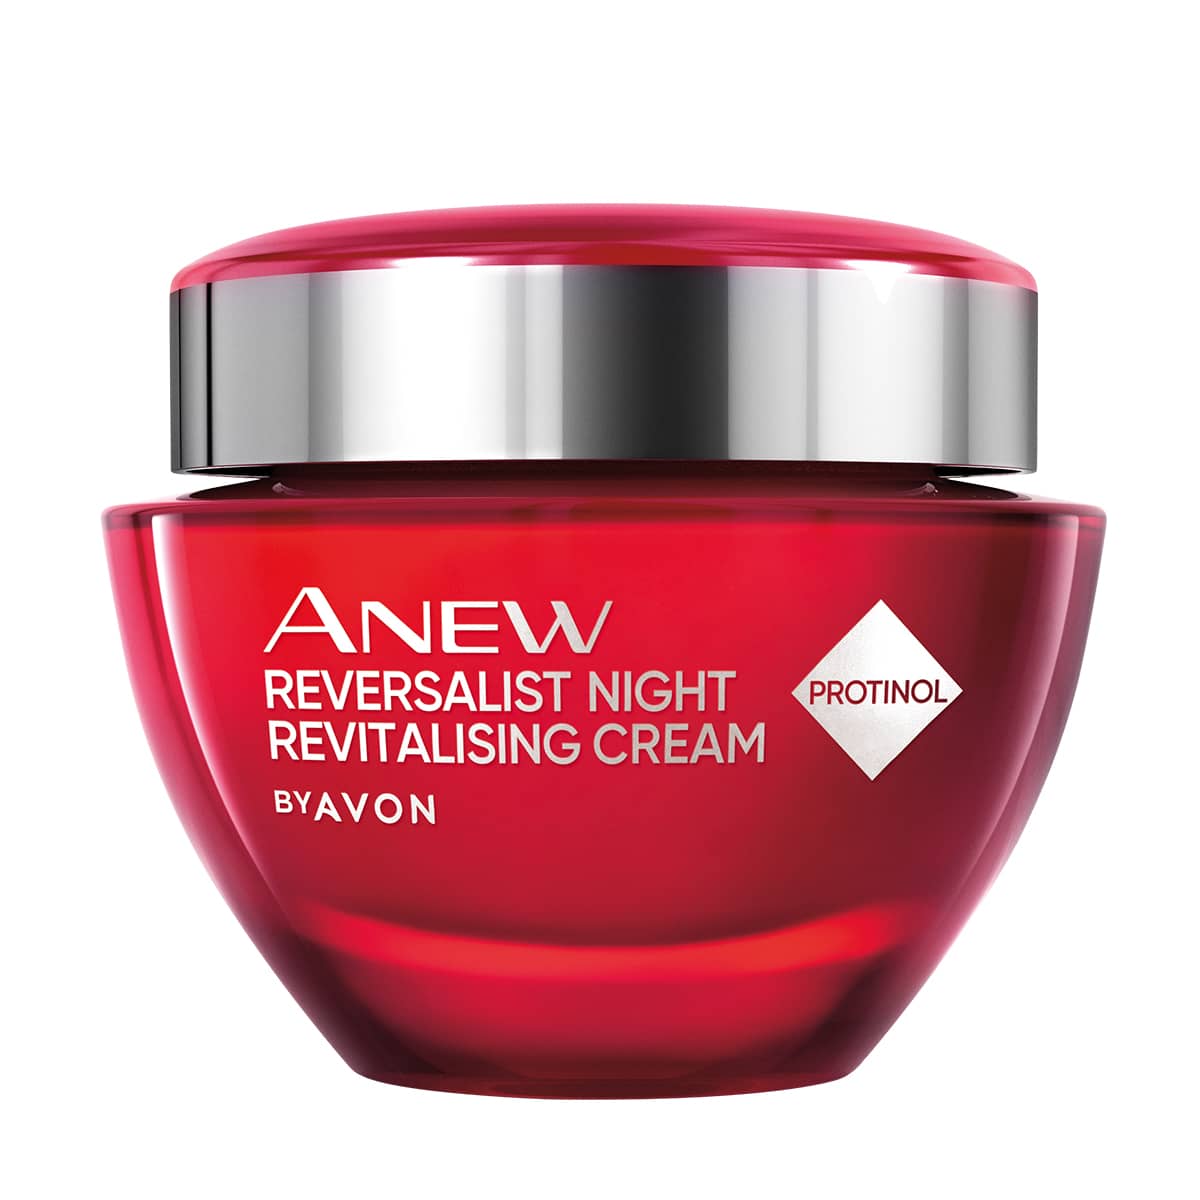 Anew Reversalist Night Revitalising Cream 50ml